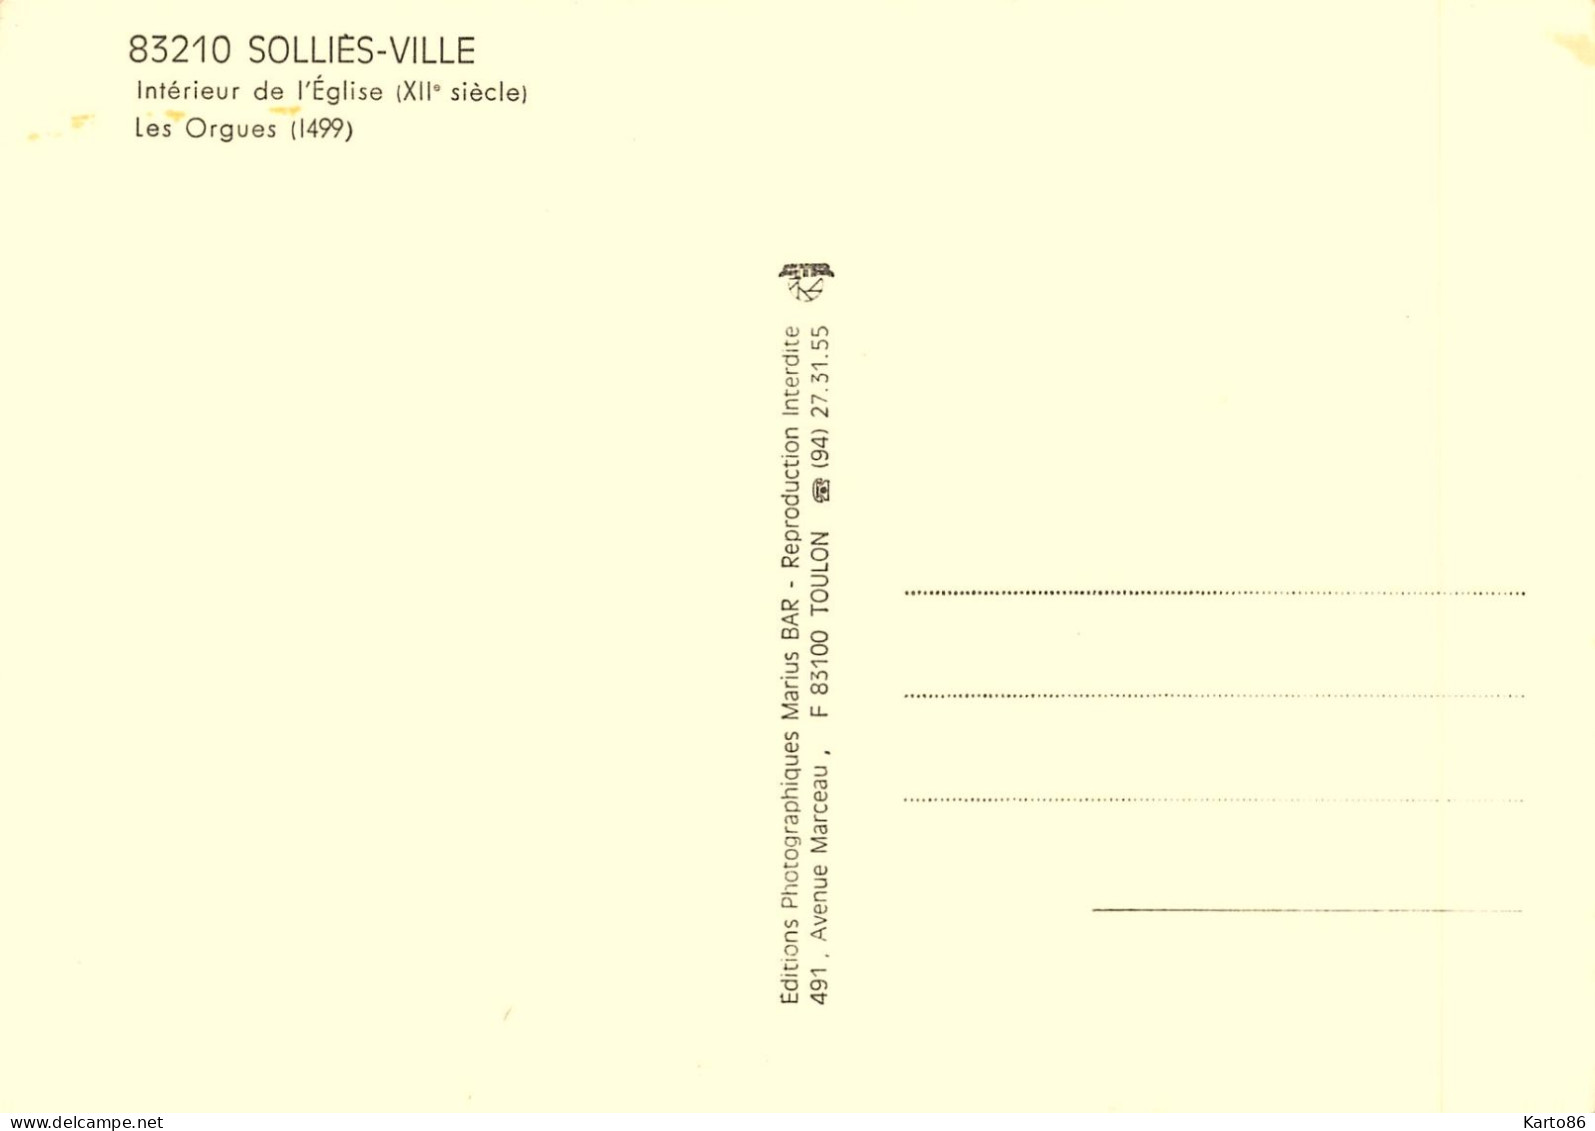 Solliès Ville * Les Orgues * Orgue Orgel Organ Organist Organiste * Intérieur De L'église * Sollies - Sollies Pont